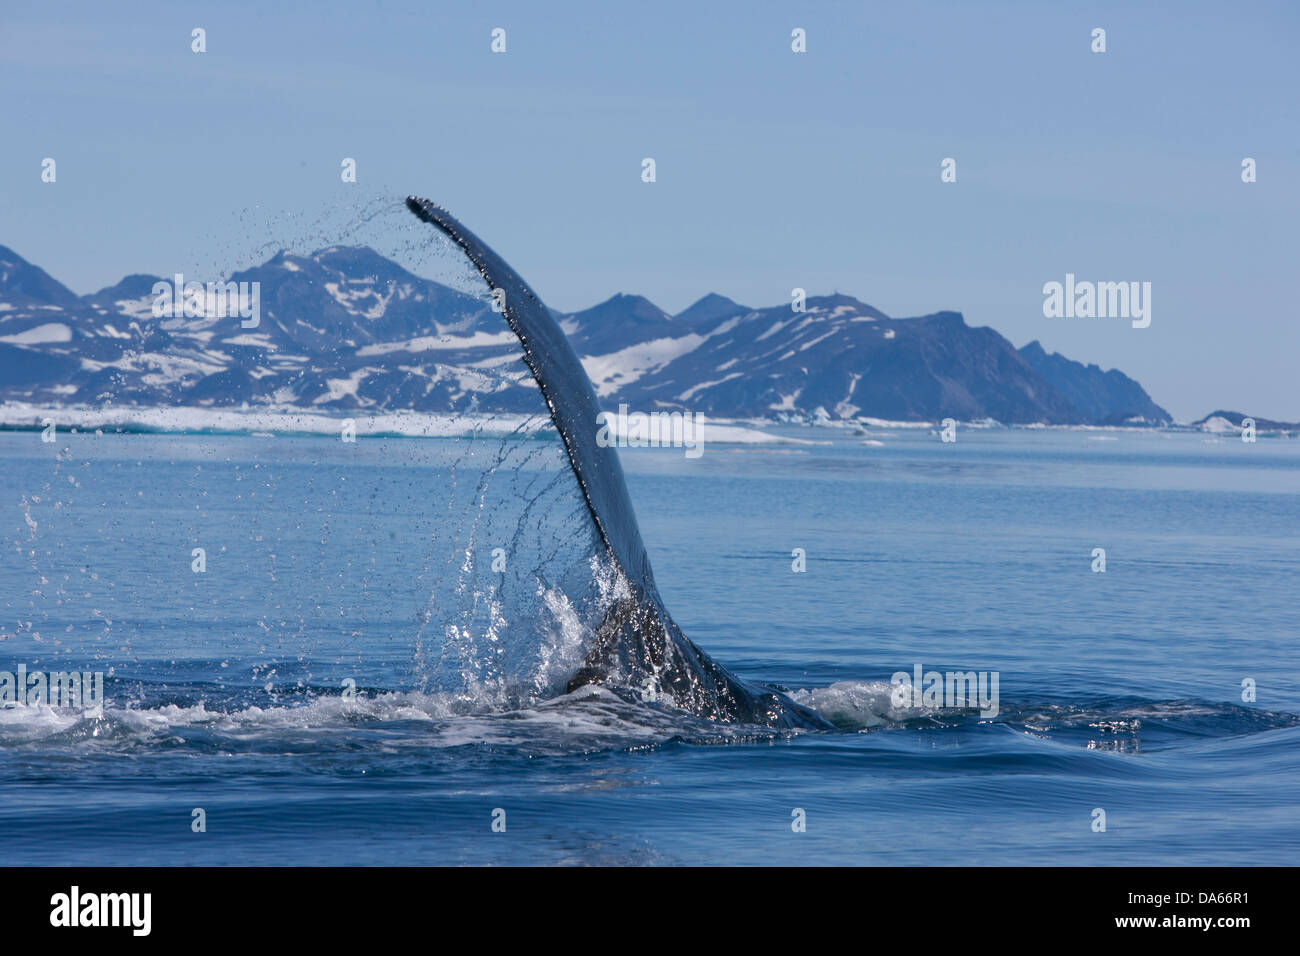 La observación de ballenas, observación de ballenas, la ballena jorobada, Groenlandia, el este de Groenlandia, ballena, ballenas, Foto de stock